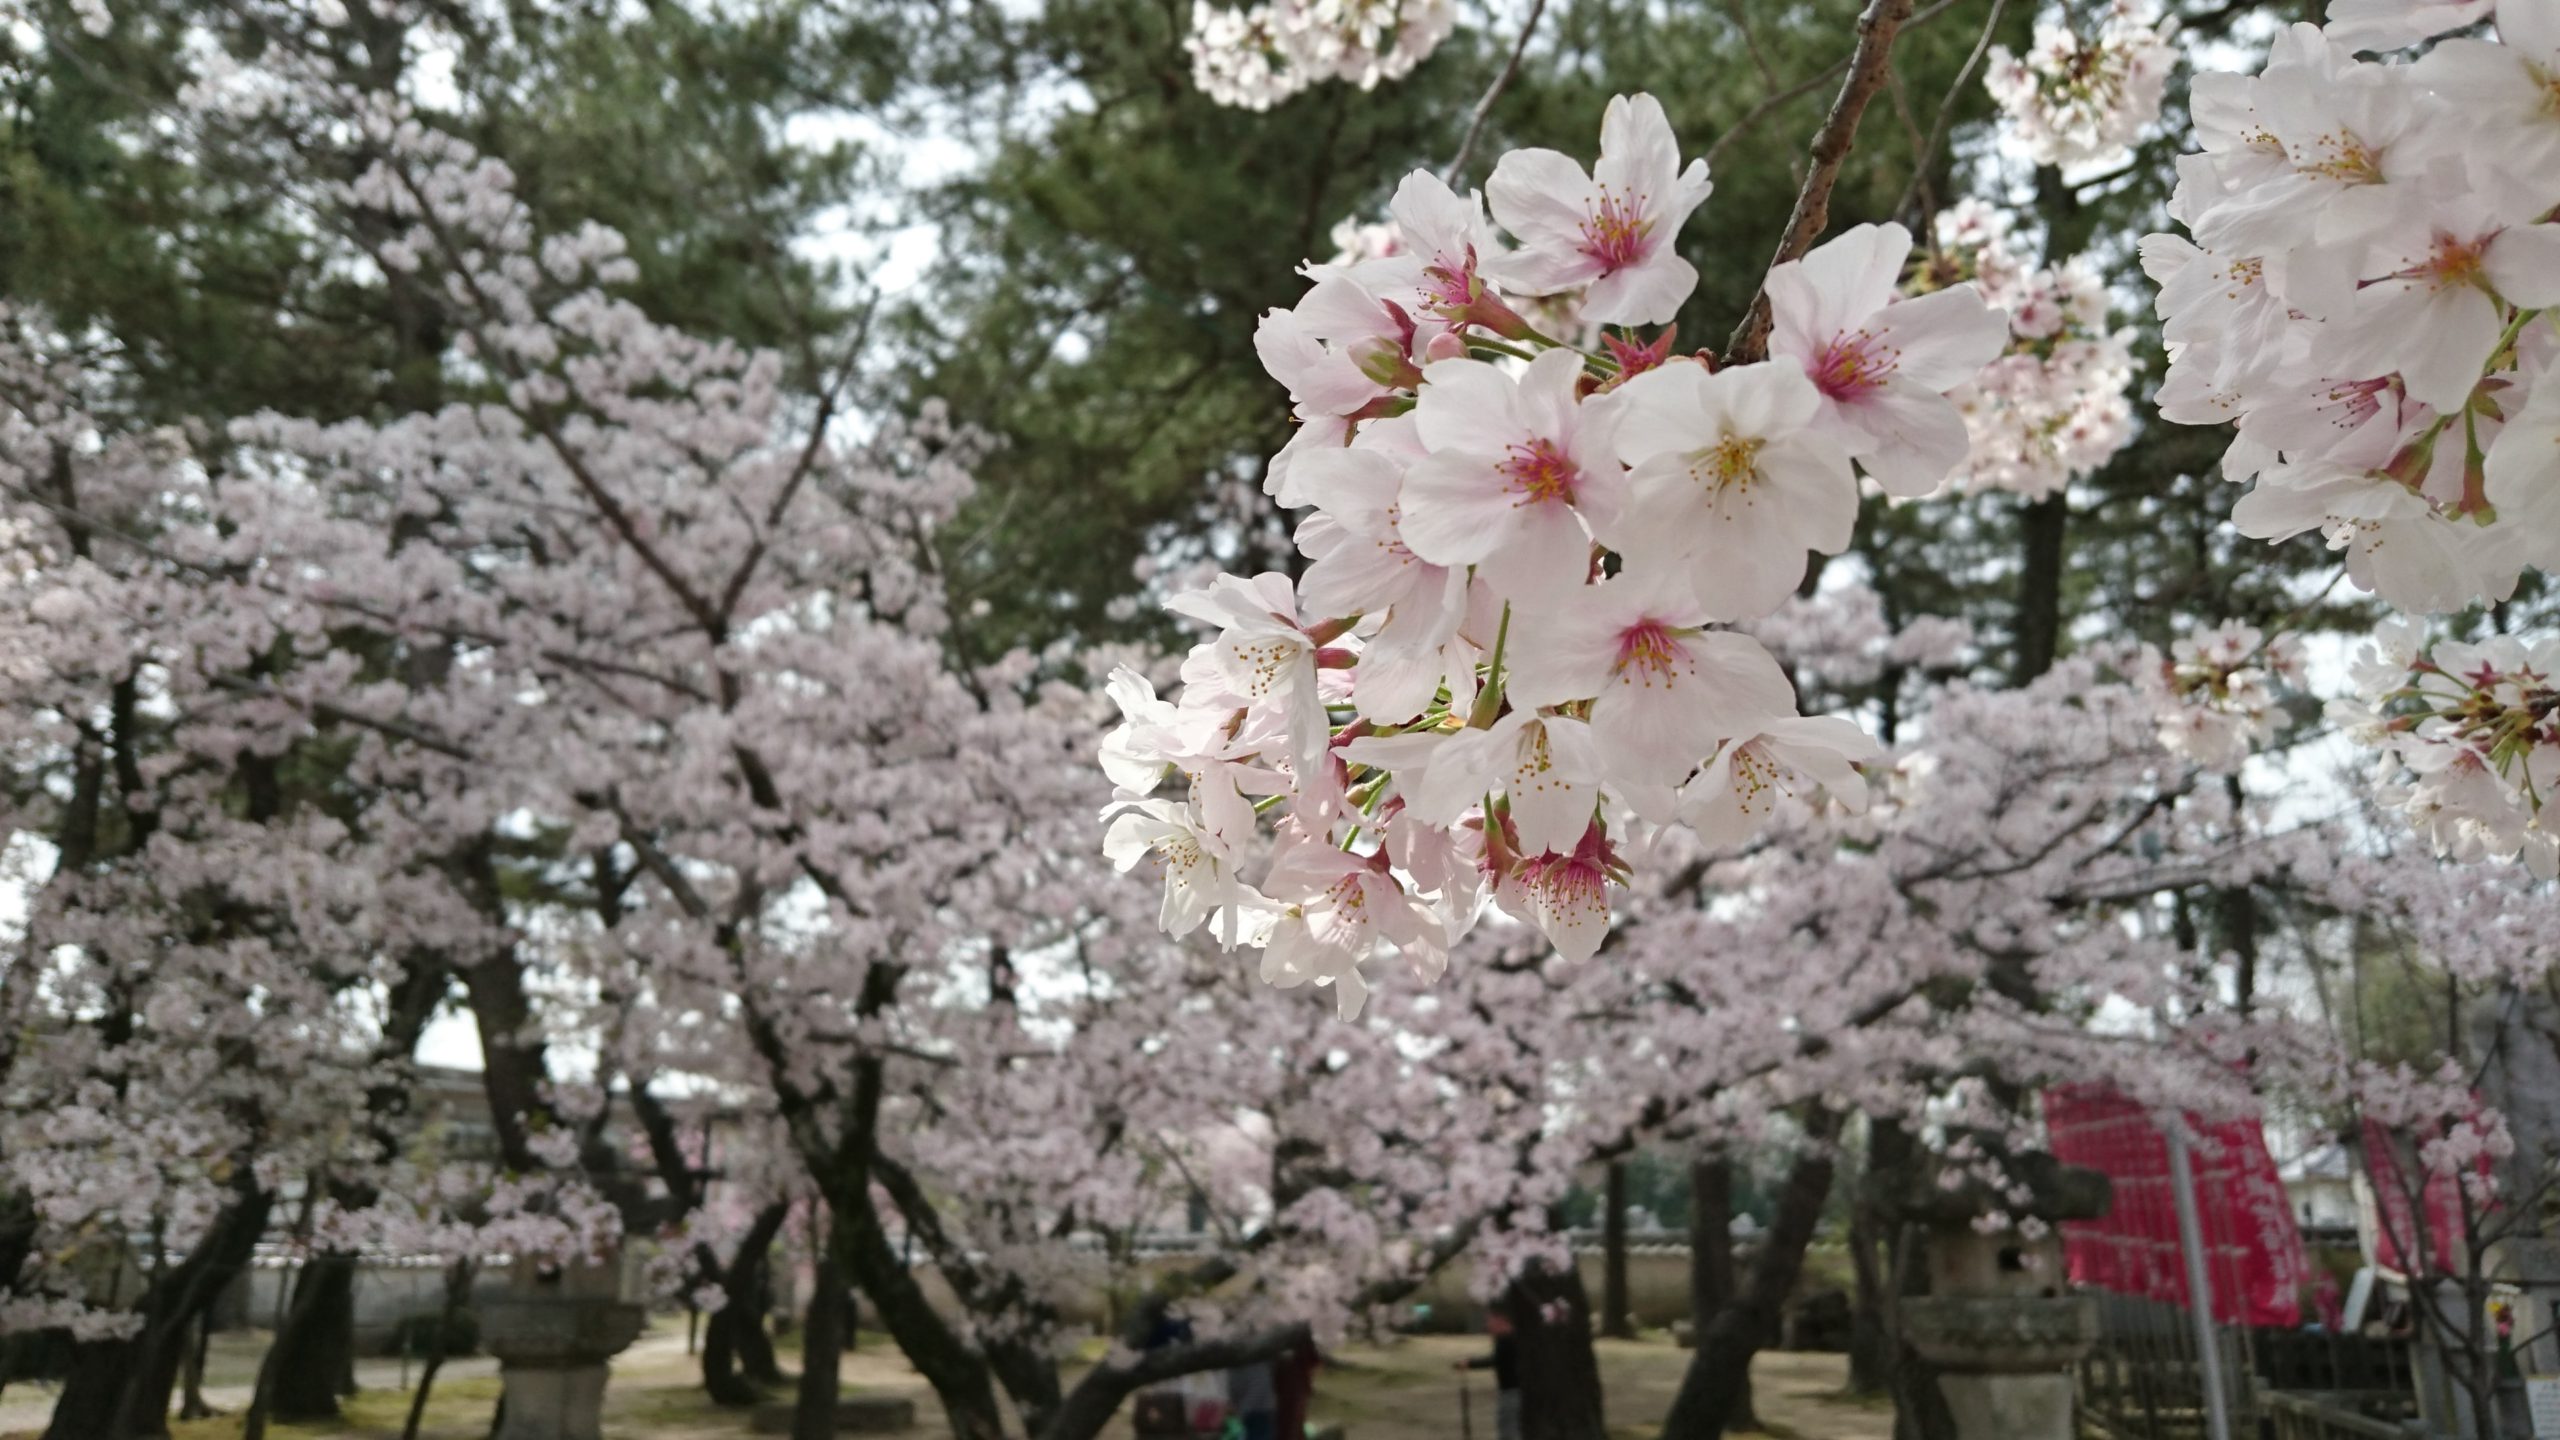 Cherry blossoms|大樹寺のさくら|亀鳴くは 雨の予報か 舞う和尚|2016/04/06|